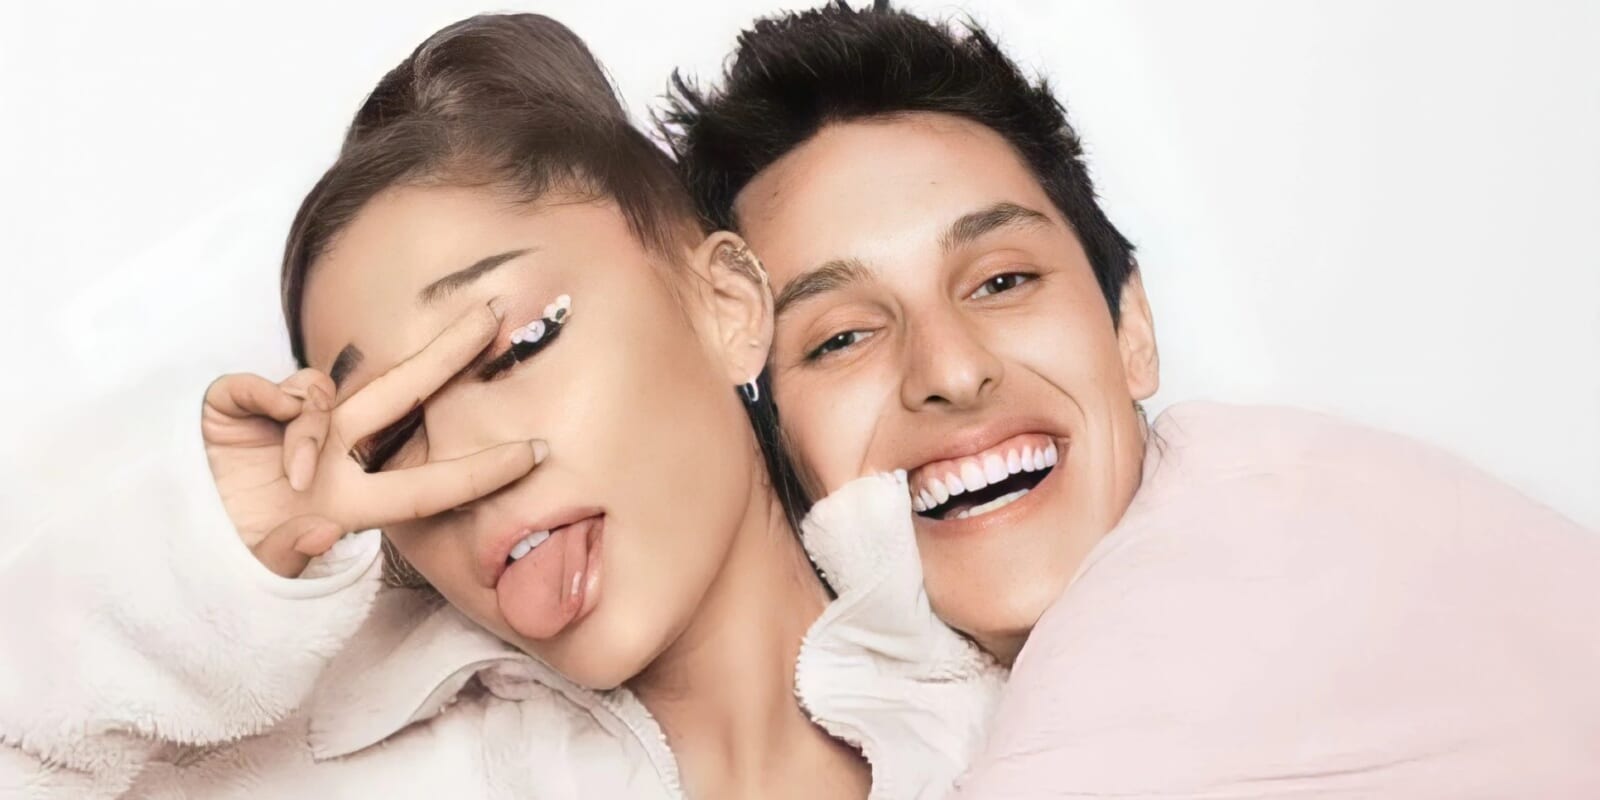 Ariana Grande et Dalton Gomez, c’est terminé : la chanteuse dépose une demande de divorce